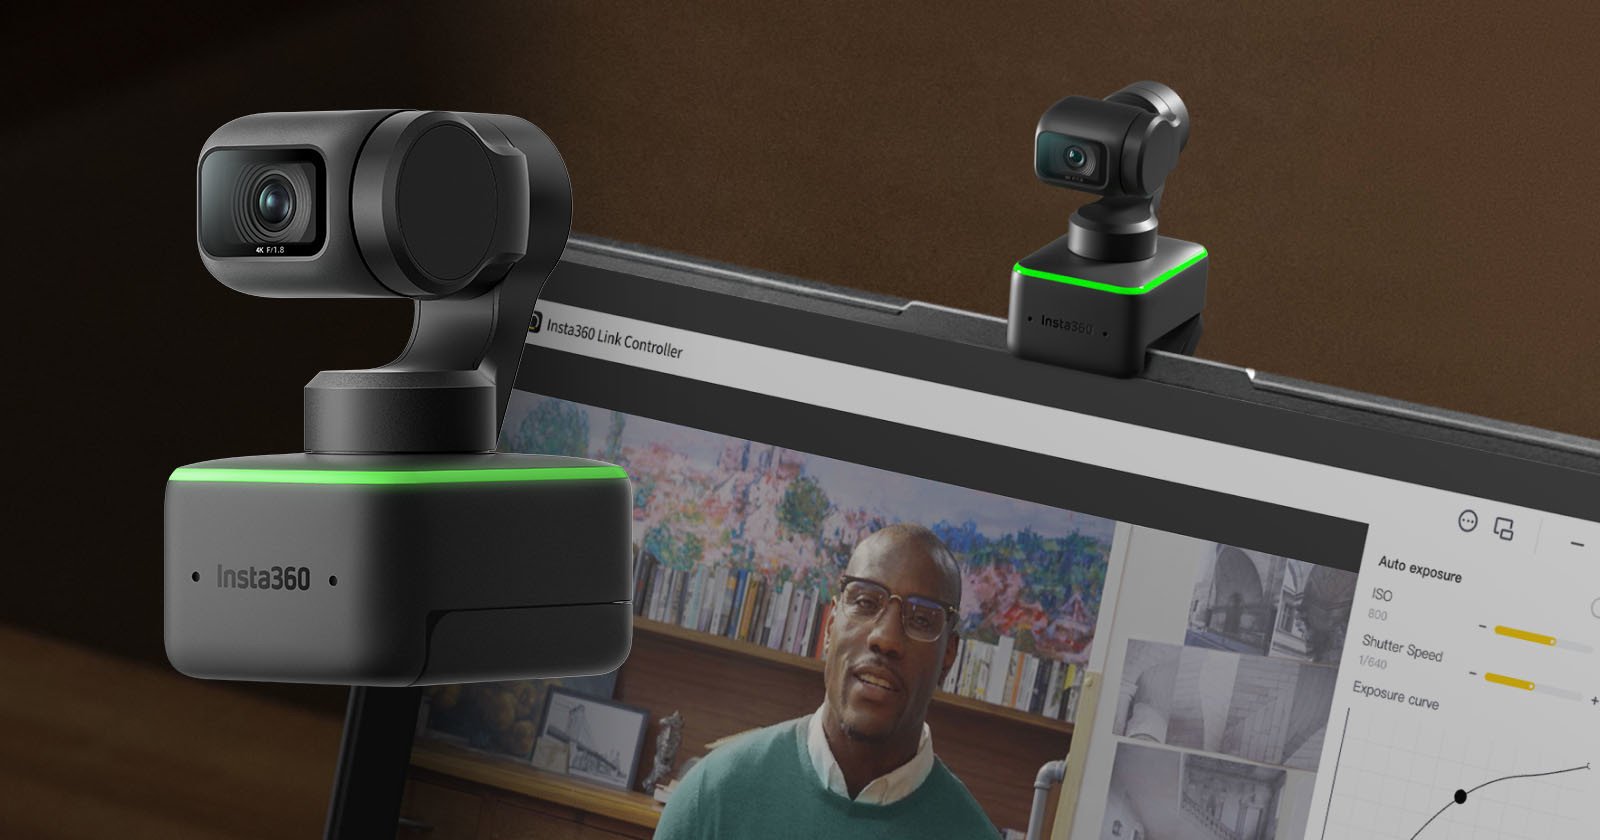  insta360 makes webcams now unveils ai-powered link camera 